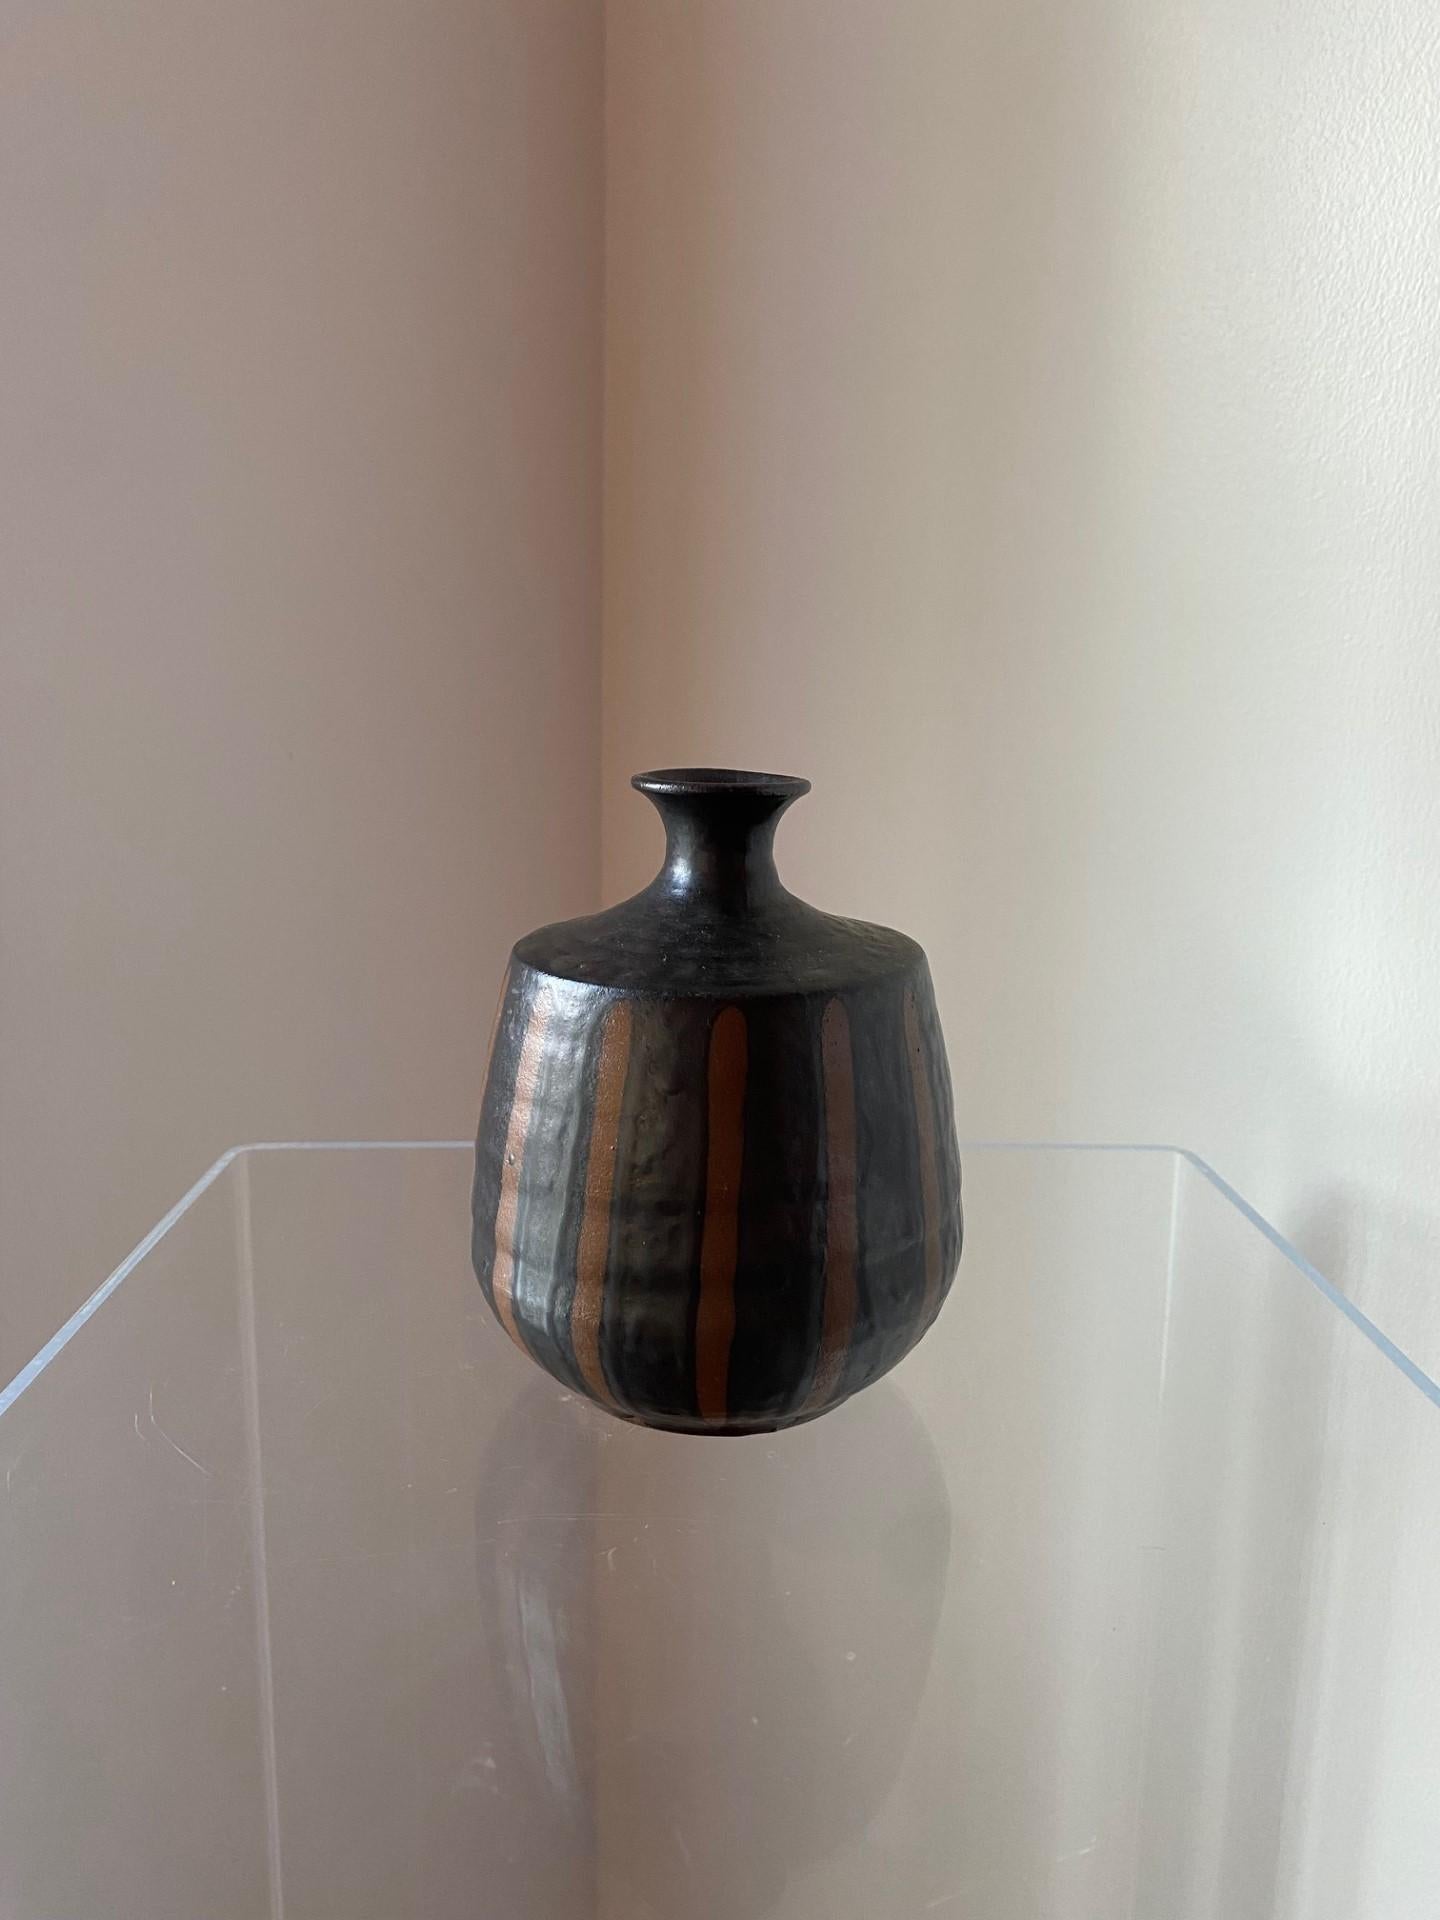 Magnifique vase en céramique de grès par creative decorative co inc, fabriqué au Japon. Signé sans éclats ni fissures.   Une belle pièce, intemporelle et unique.